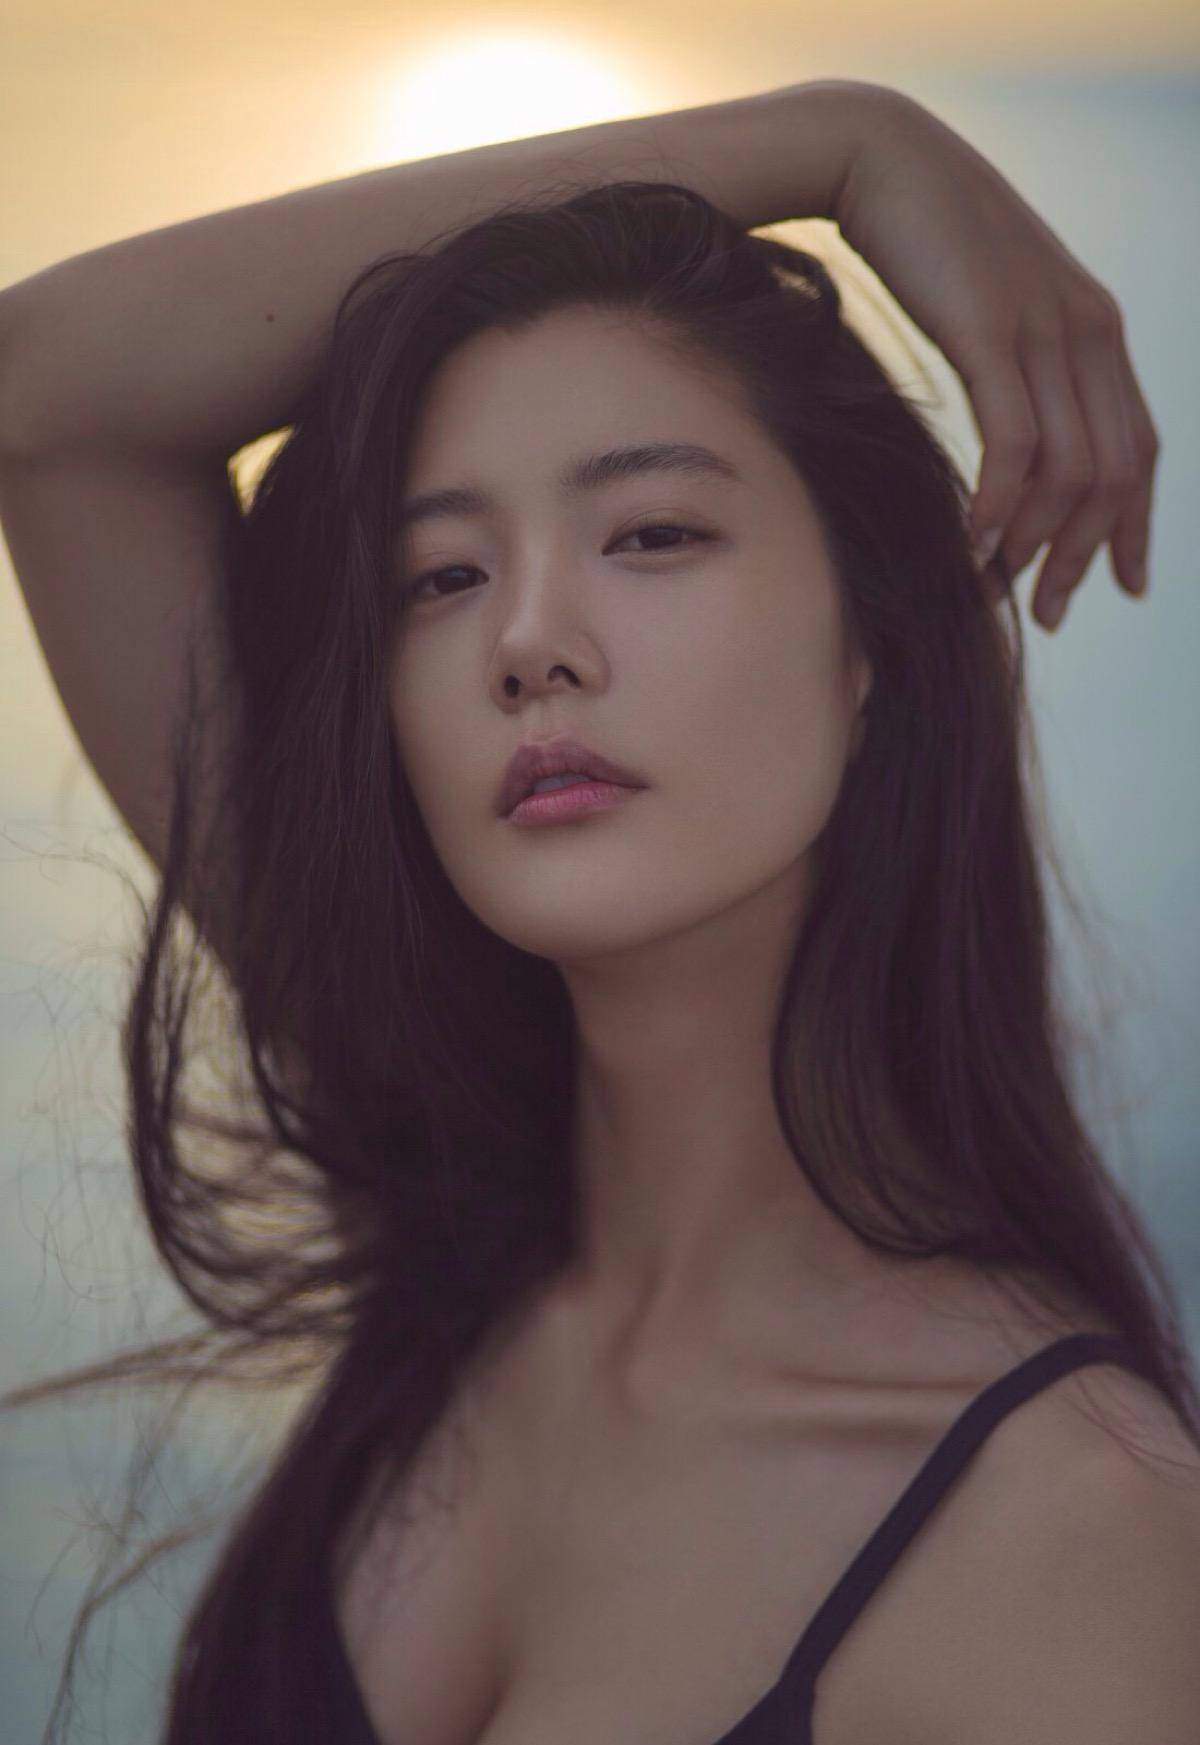 出名的韩国美女李成敏大家应该不陌生吧,这位来自韩国的演员也被网友